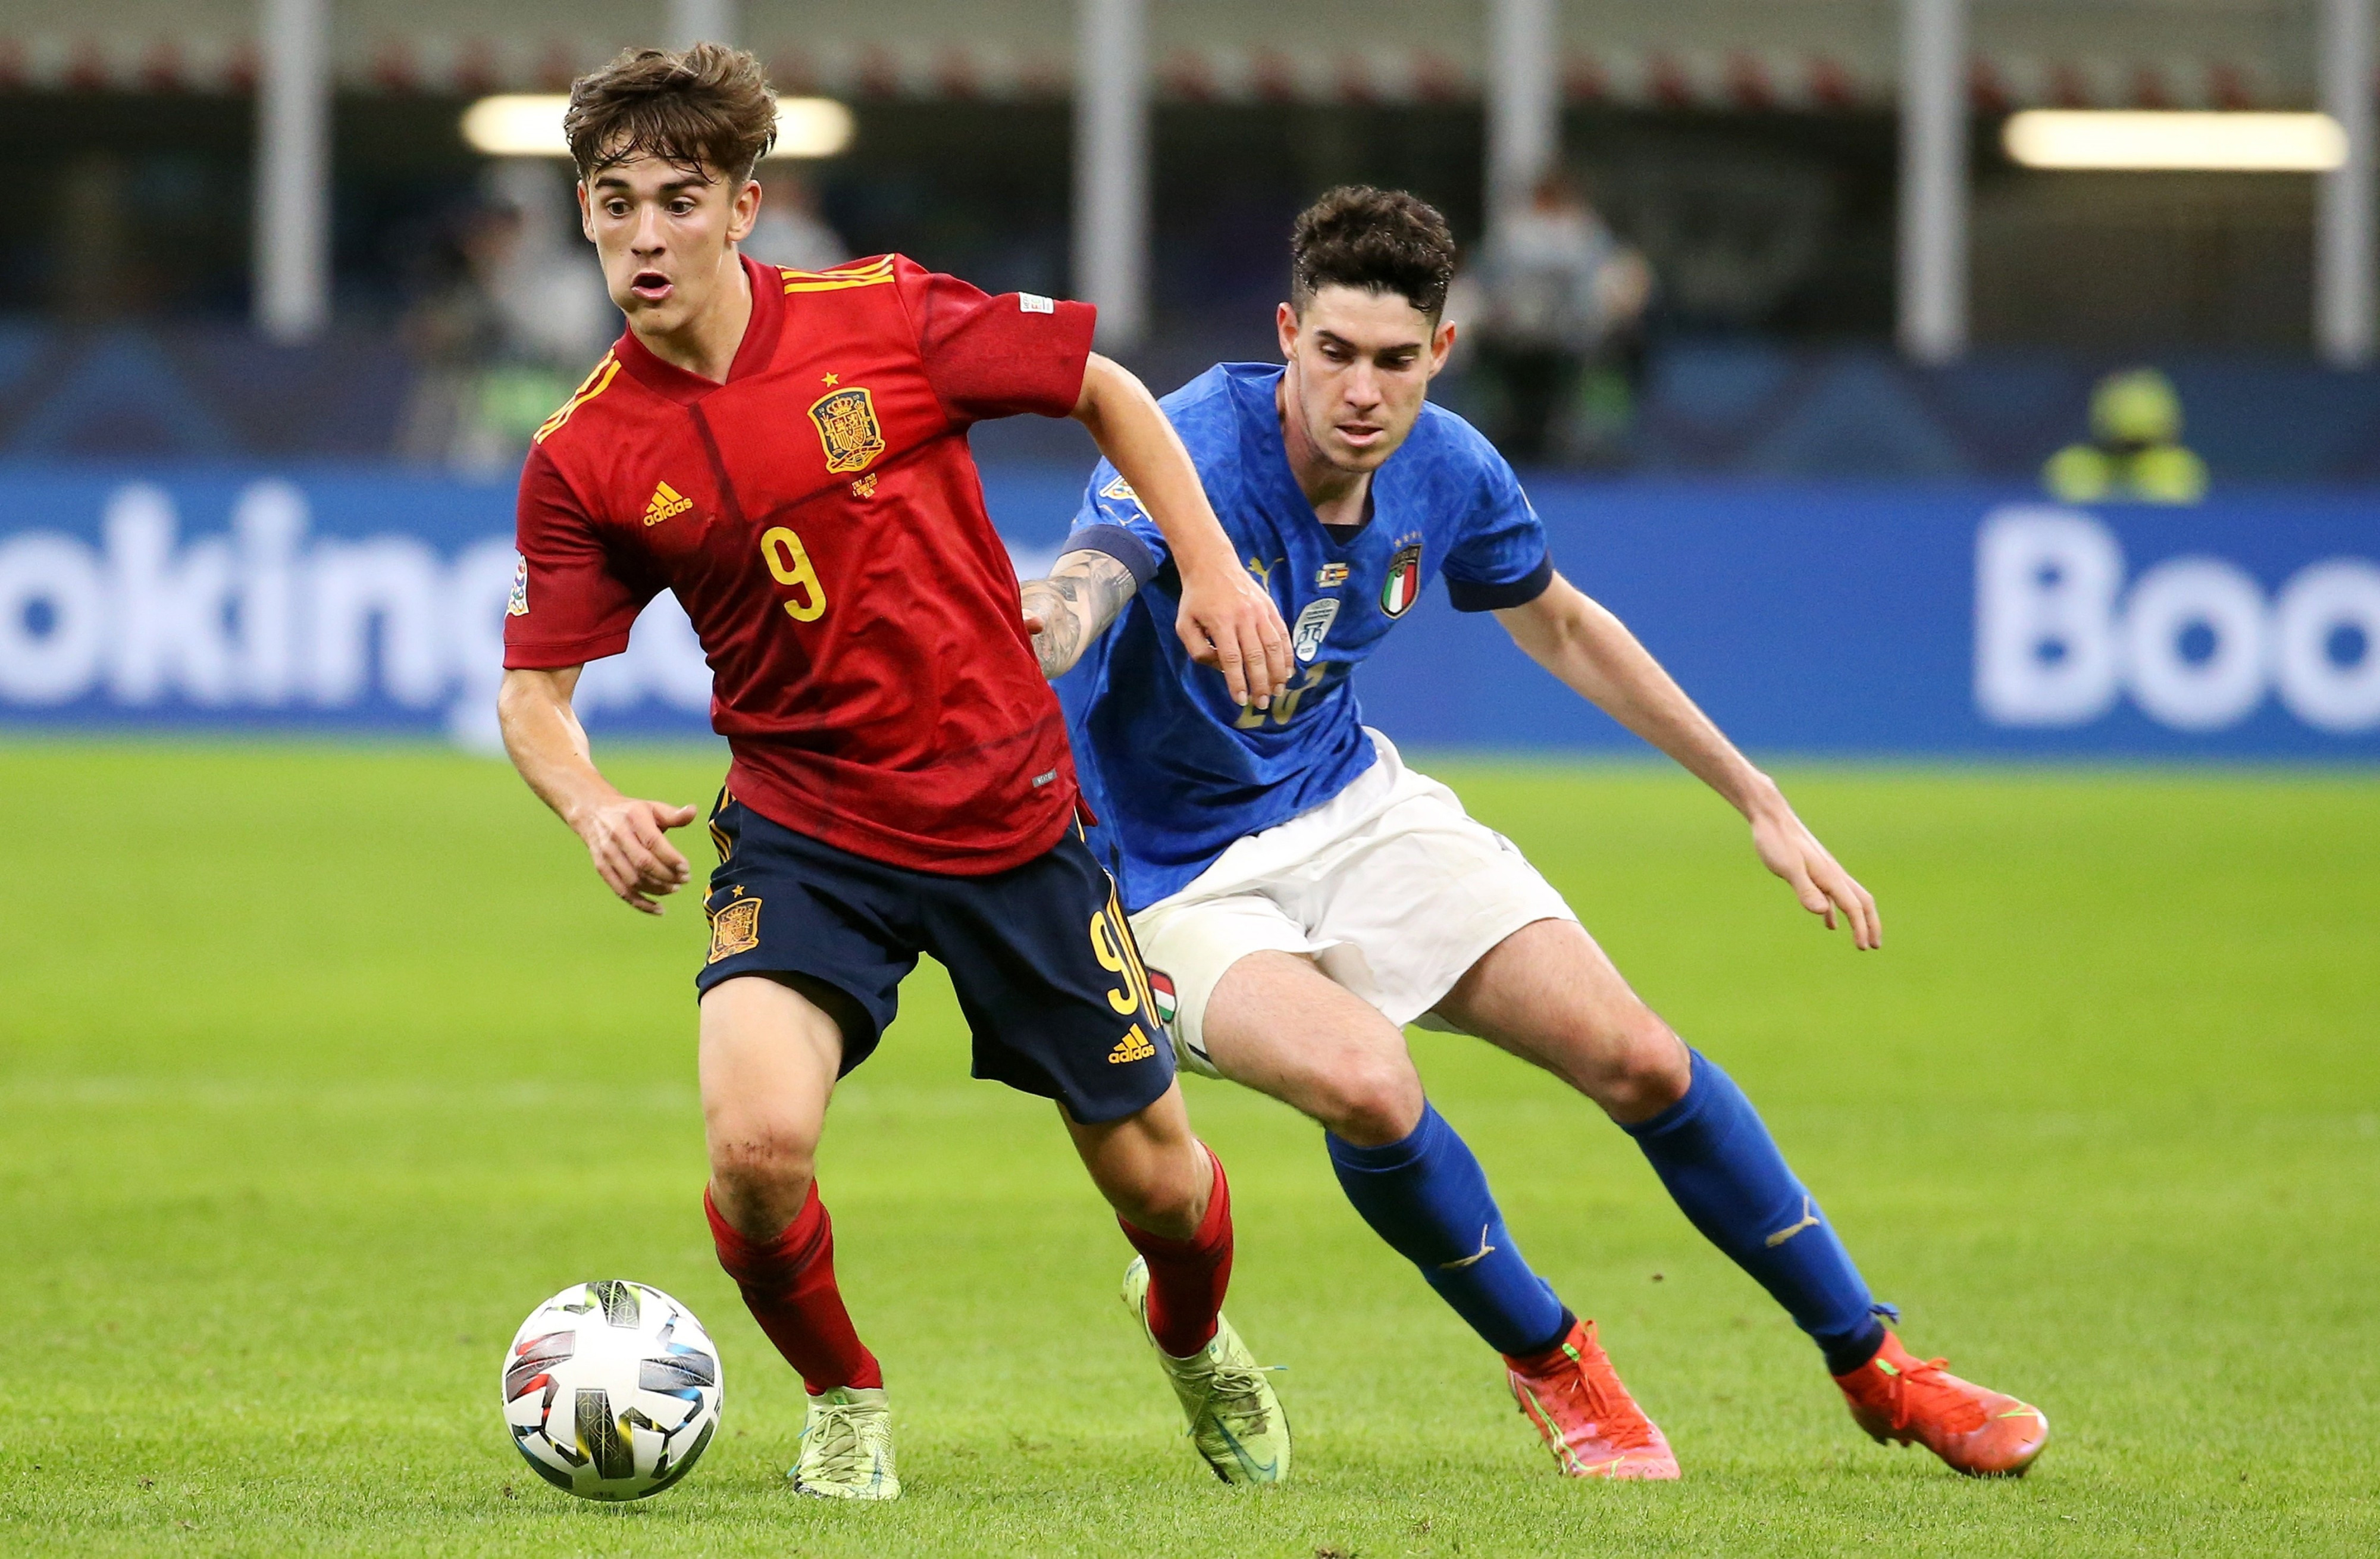 Gavi jugando contra la selección italiana / EFE